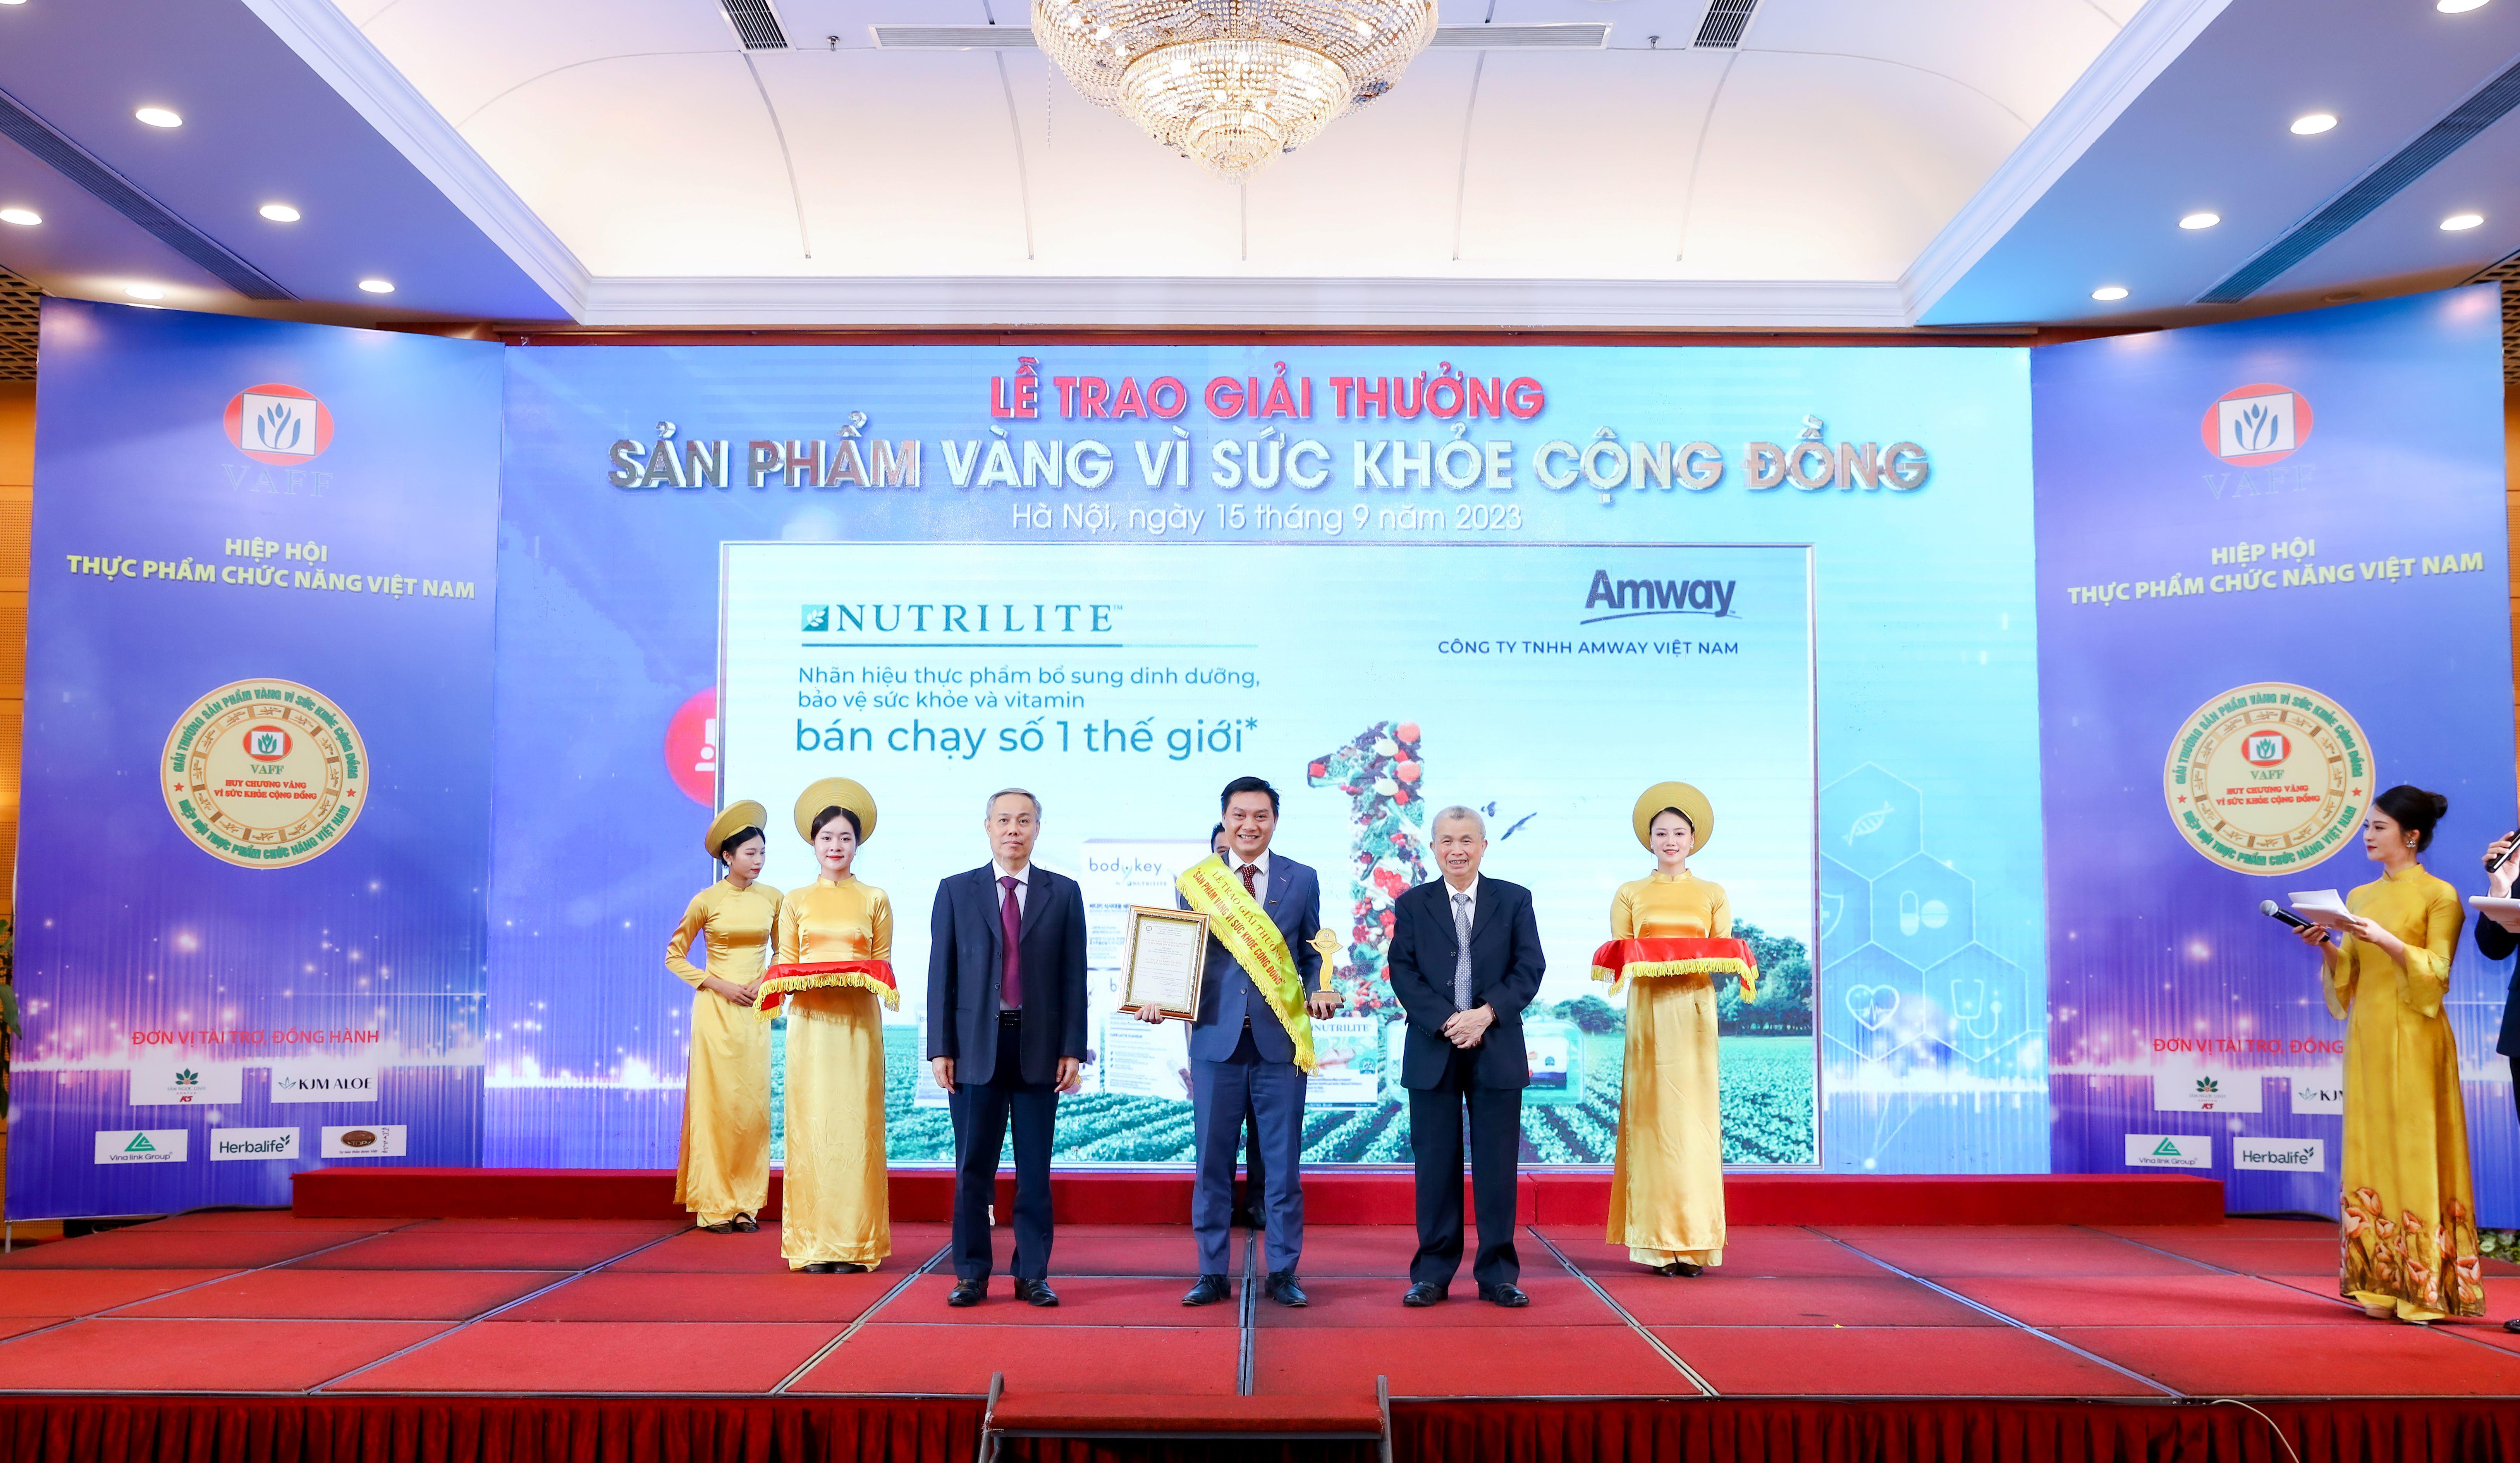 Amway Việt Nam lần thứ 11 vinh dự nhận giải thưởng “Sản phẩm vàng vì sức khỏe cộng đồng” - 1